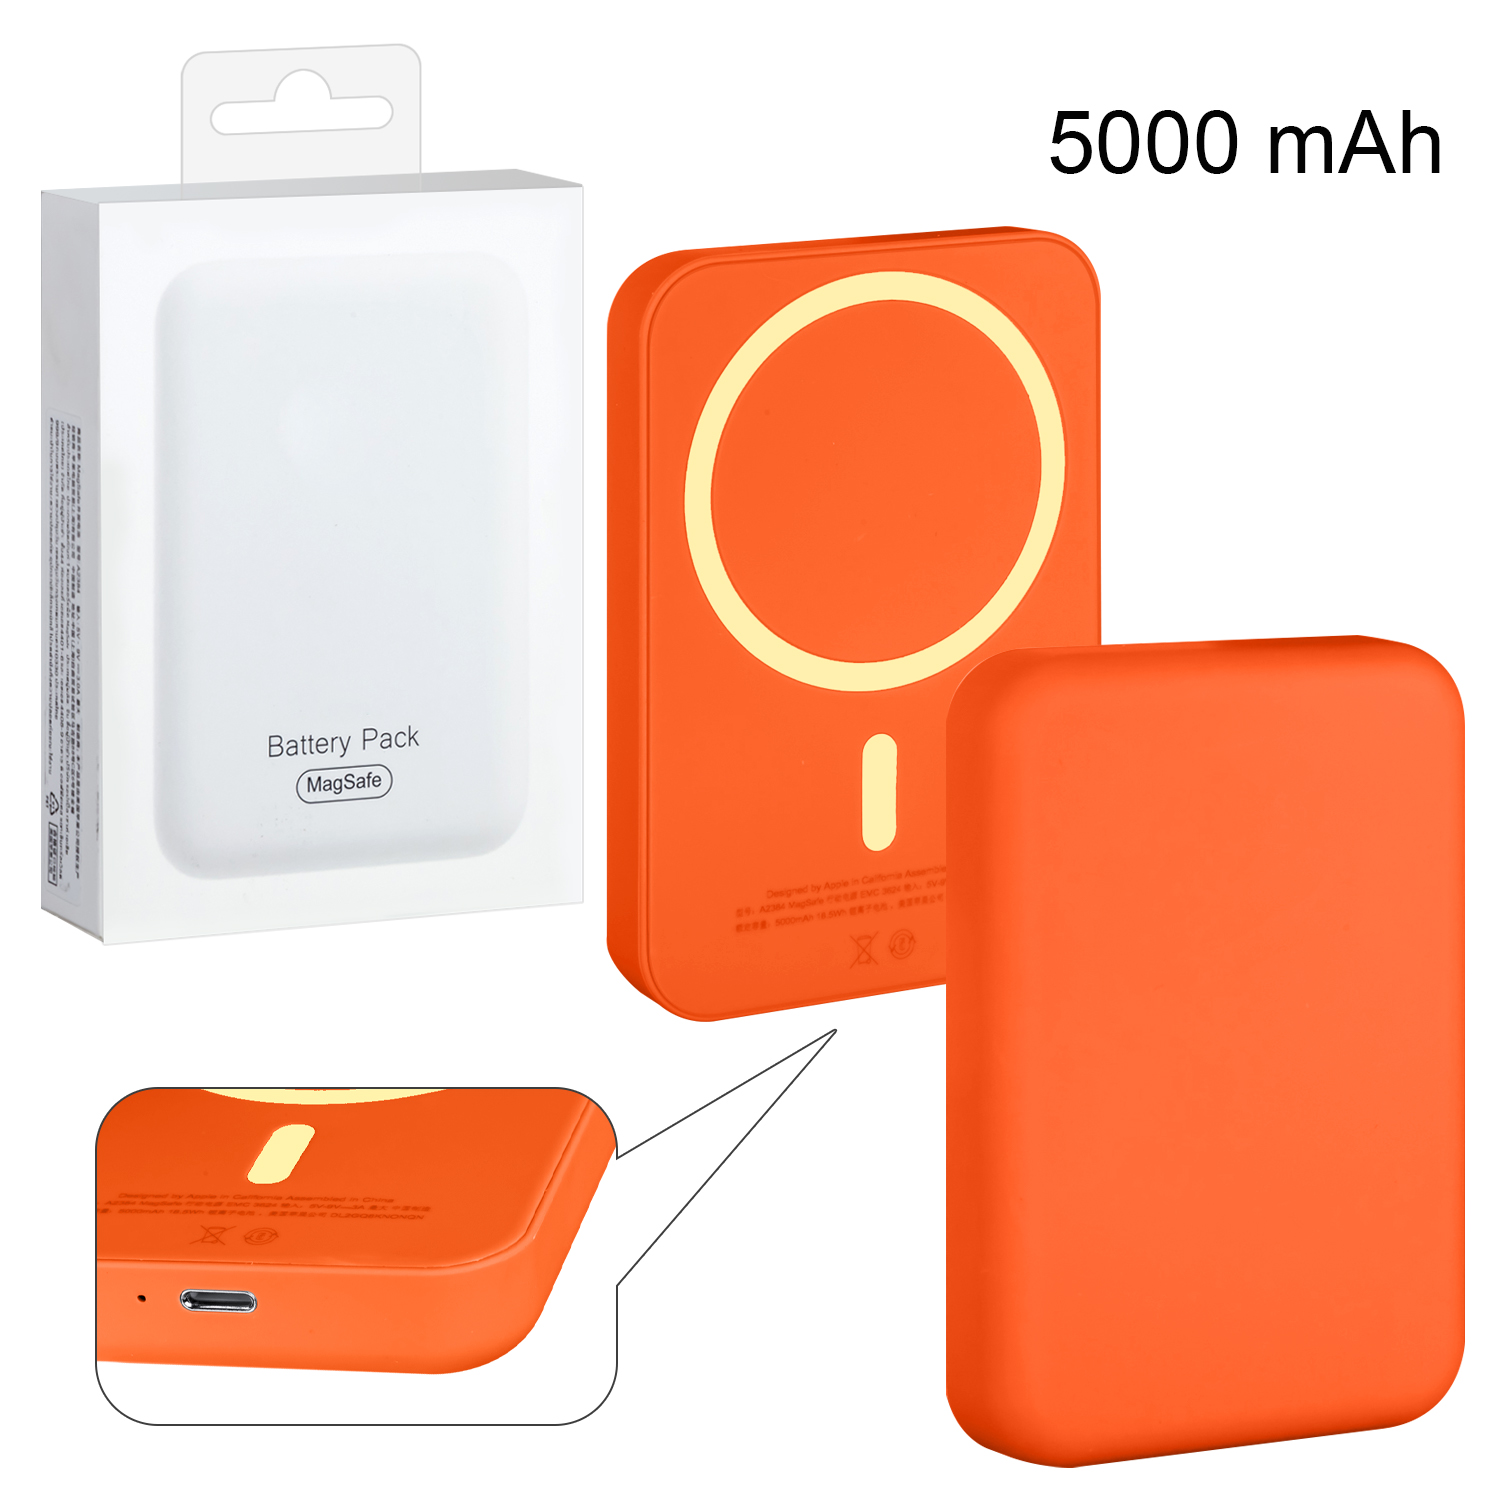 Беспроводное зарядное устройство Magsafe магнитное 5W 5000mAh (no logo) оранжевый